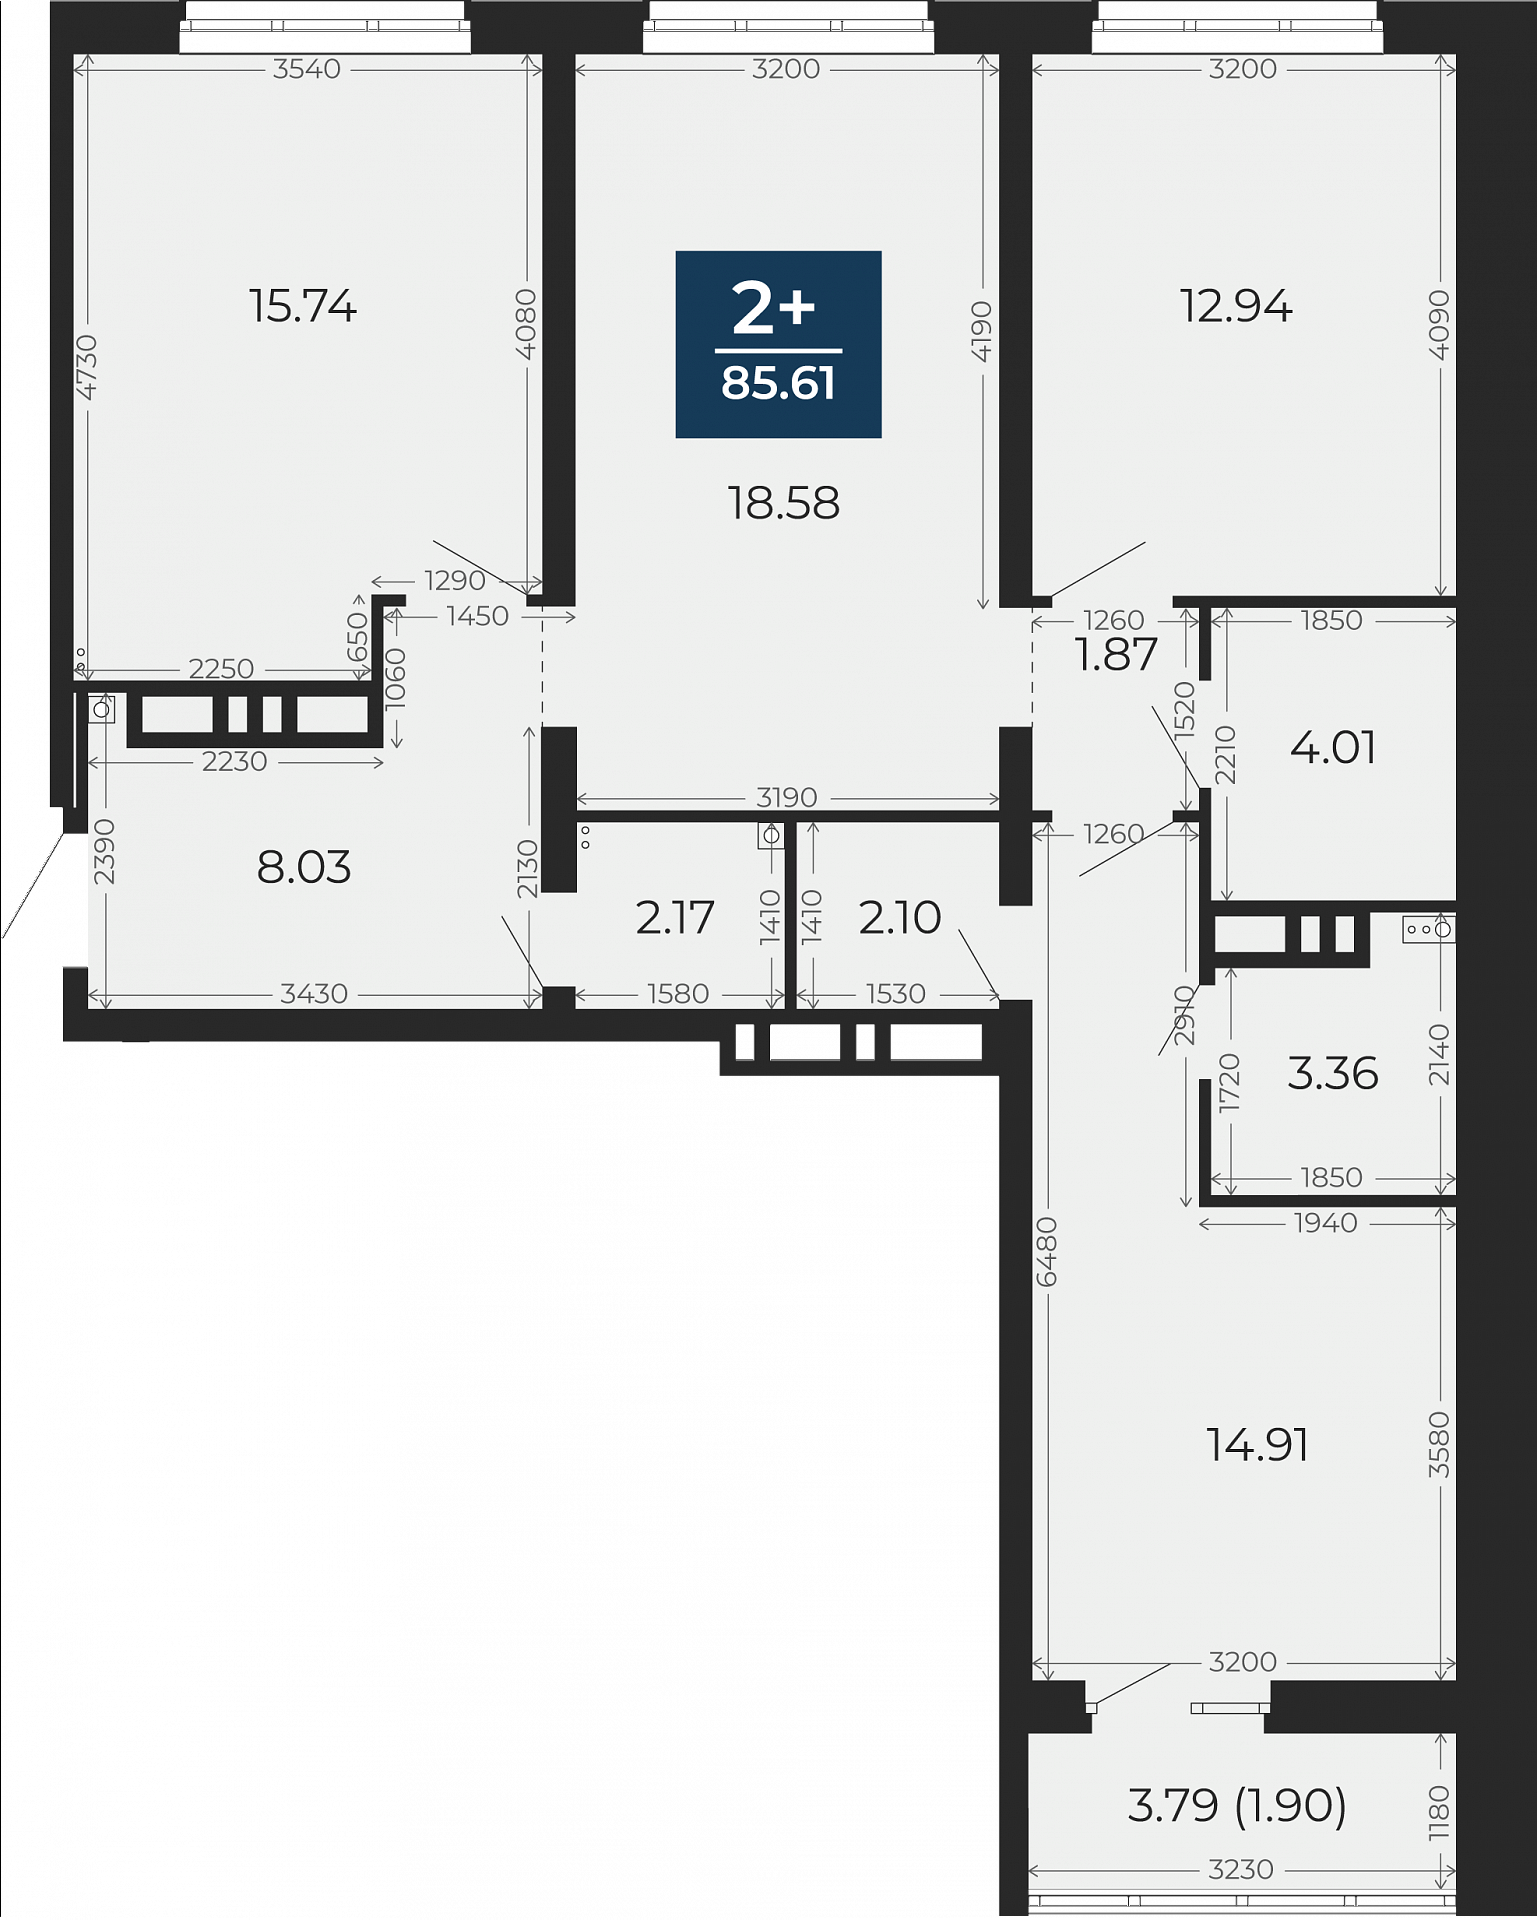 Квартира № 177, 2-комнатная, 85.61 кв. м, 6 этаж